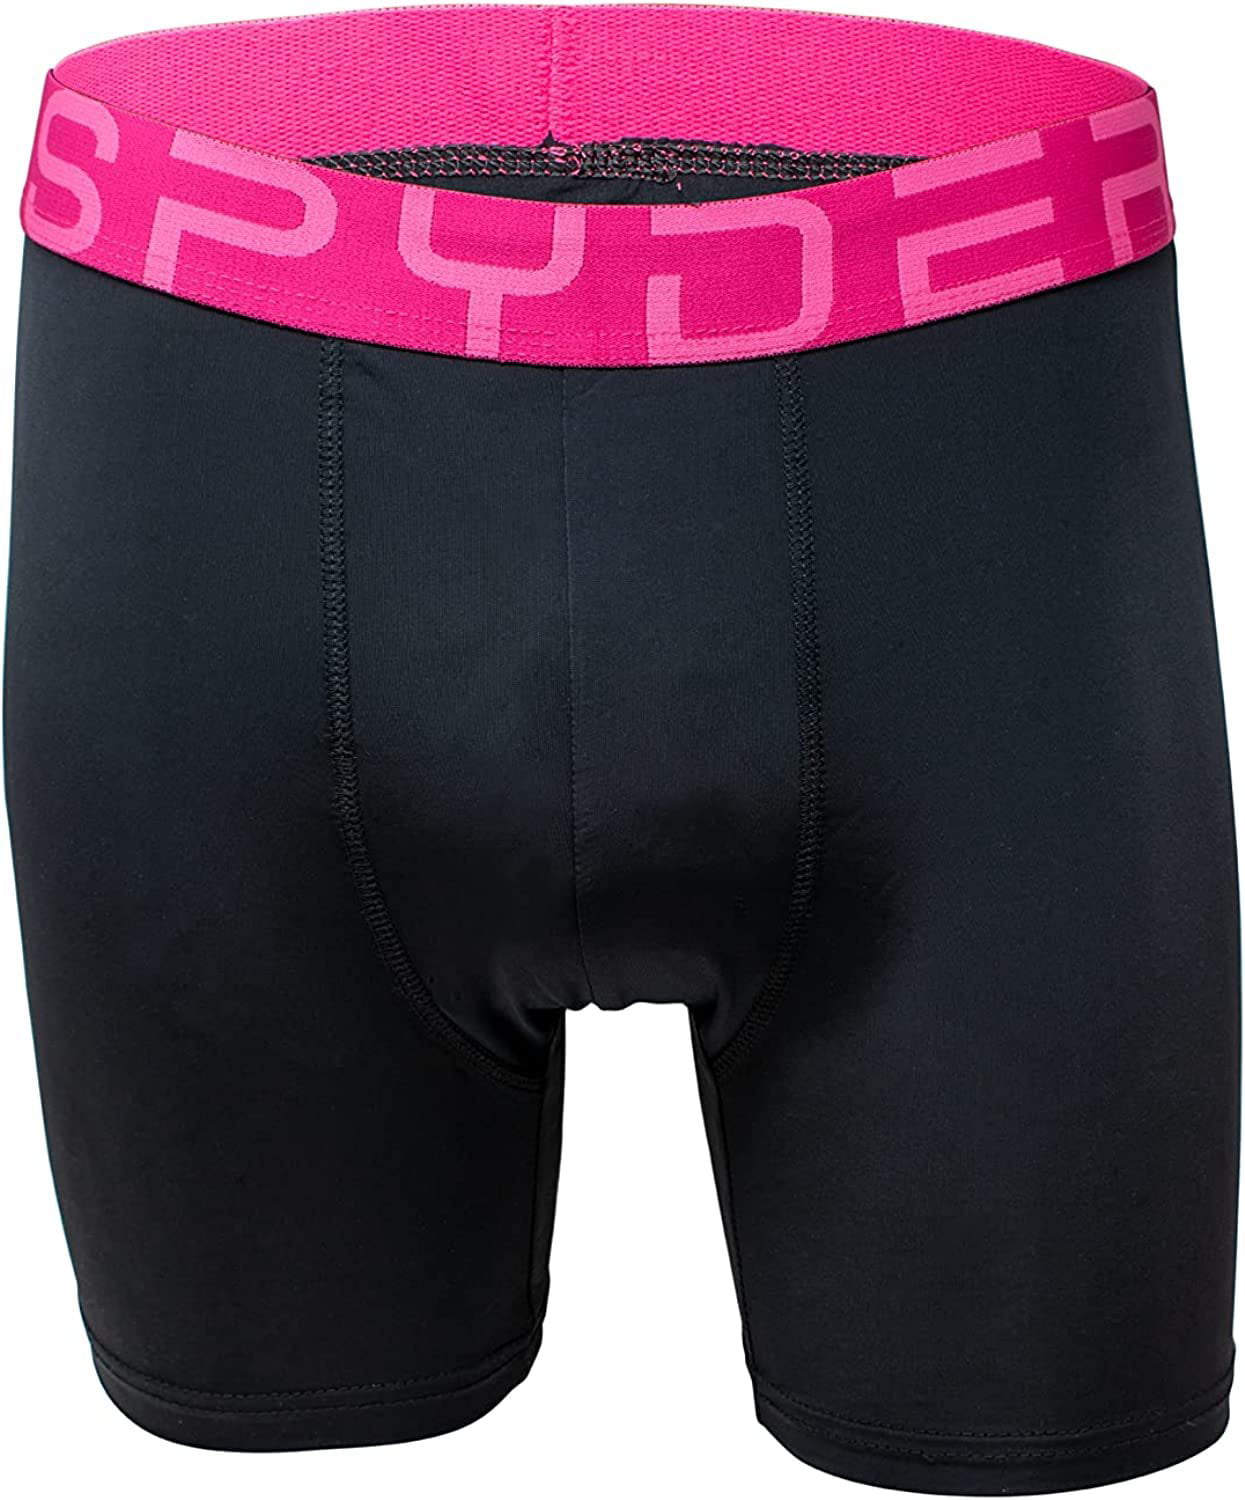 Spyder Sports underwear for women, Buy online